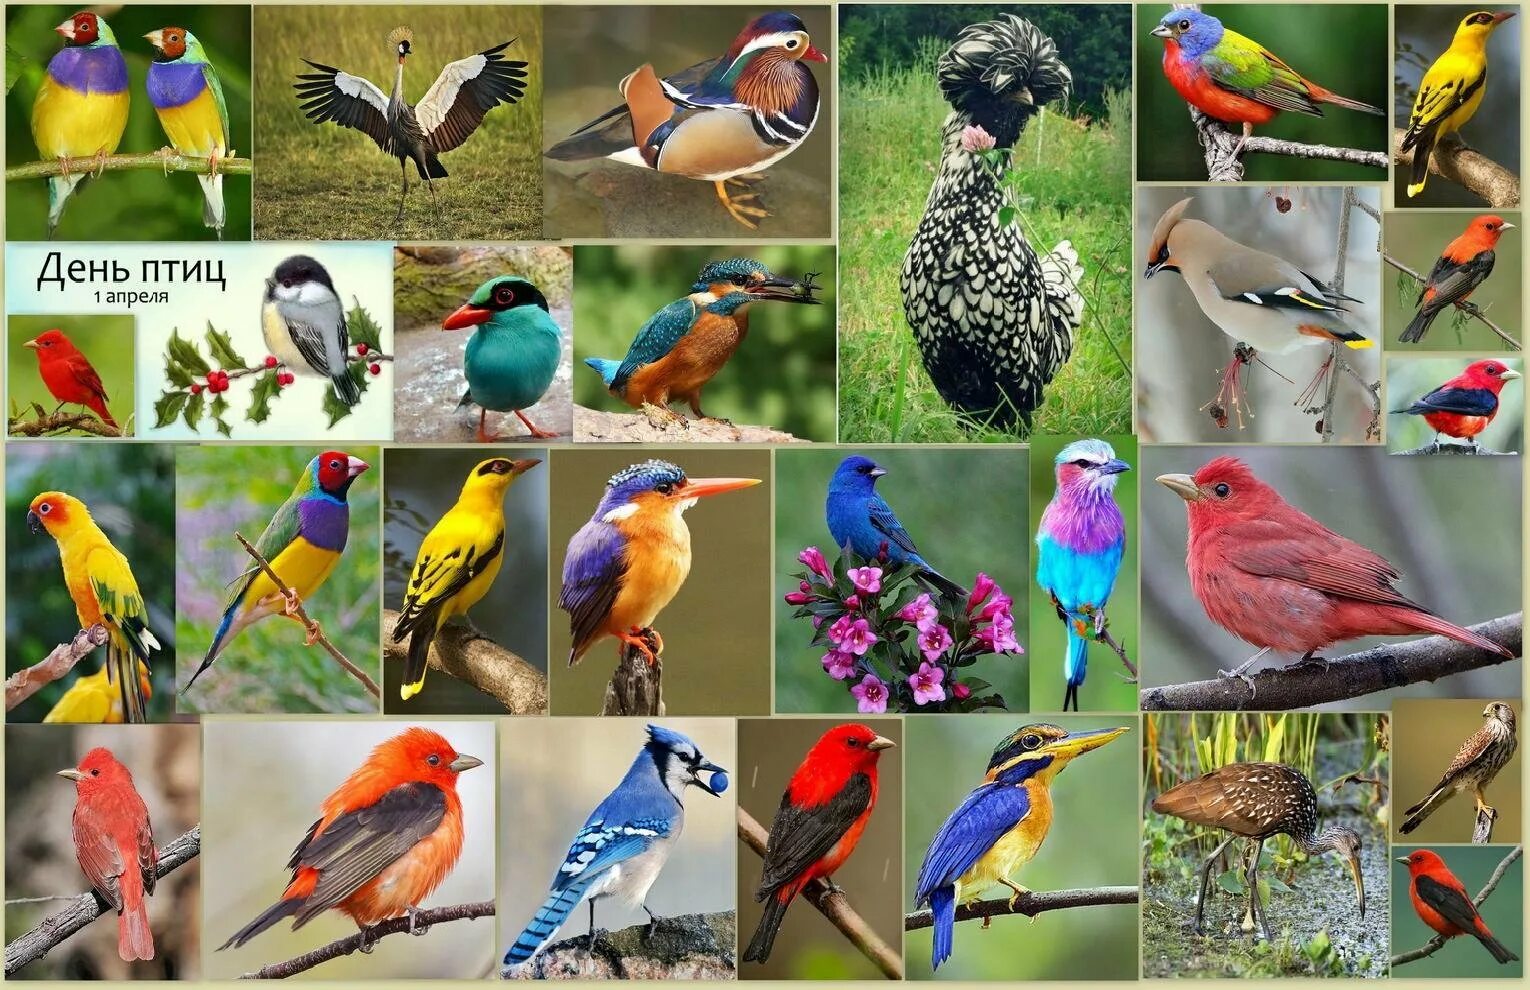 1 Апреля Международный день птиц. Апрель день птиц. Междунаровныйденьптиц. Птицы коллаж.